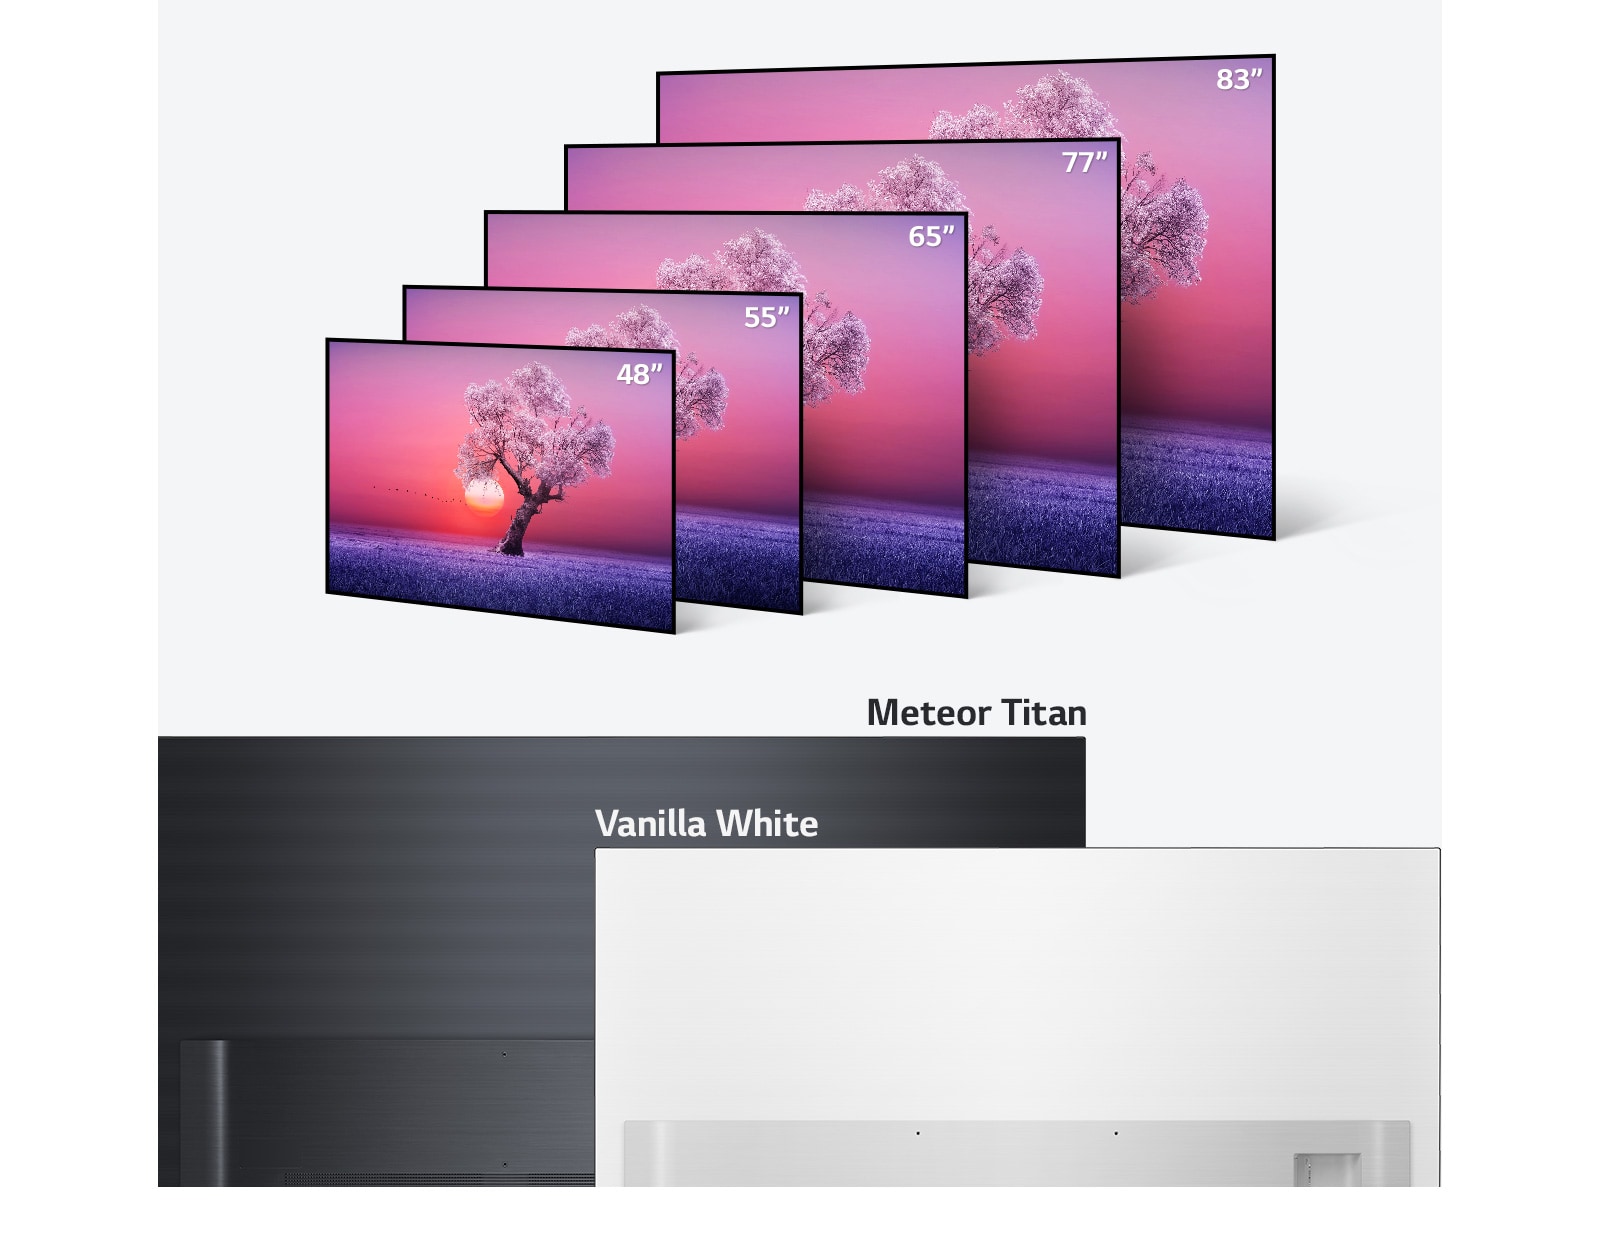 Gamma di prodotti TV LG OLED in diverse dimensioni da 48 pollici a 83 pollici e nei colori nero chiaro e bianco vaniglia